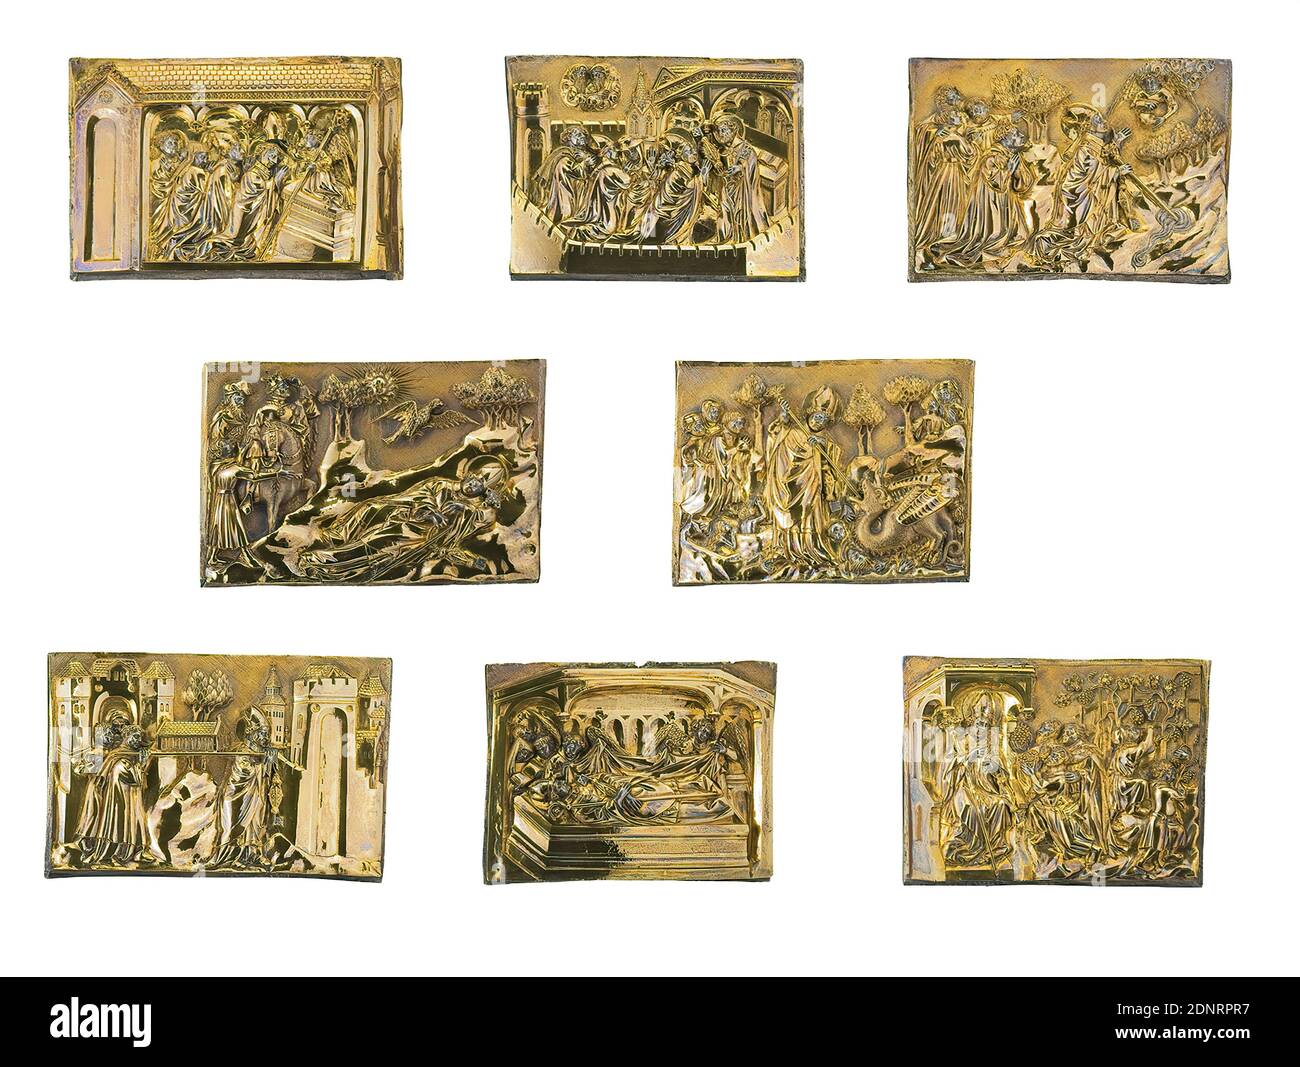 Piastre Servatius, argento, dorate, oggetto (per piatto): Altezza: 10.7 cm; larghezza: 13.8 cm; profondità: 2,5 cm, opere pittoriche/arti applicate e belle, Reliquari, opere d'oro/argenteria, attrezzature ecclesiali, Santi, arte medievale, per gratitudine per un duca guaritore Heinrich di Baviera (1386-1450) donò un busto reliquiario alla Chiesa Servazio di Maastricht nel 1403. Mostra San Servazio, morto nel 384 come vescovo di Tongern. Gli otto rilievi dorati ornavano originariamente la base ottagonale del busto, che non è più conservata. Con grande piacere narrativo e precisione realistica Foto Stock